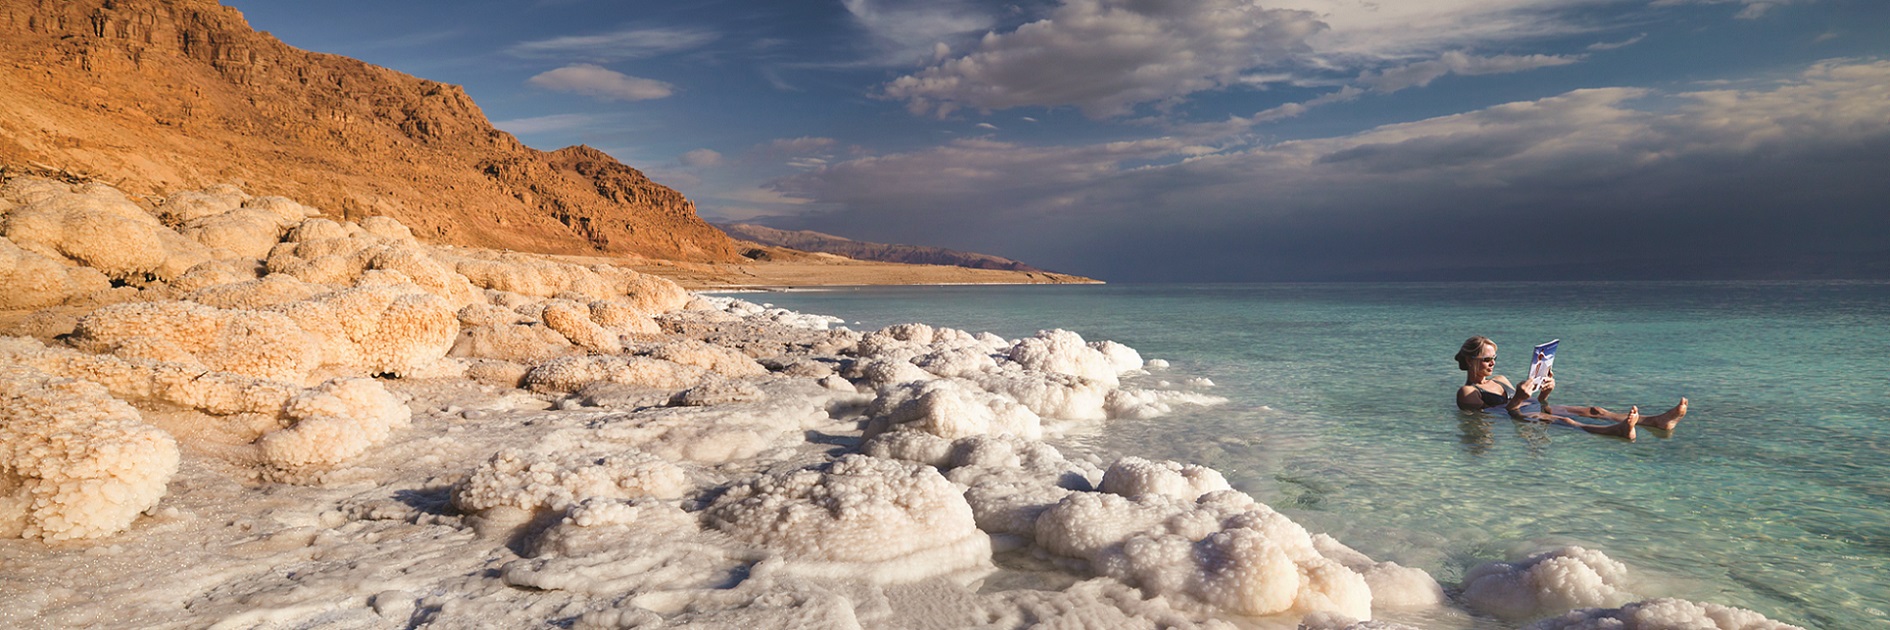 visit jordan Dead Sea - Flow travel Jordan